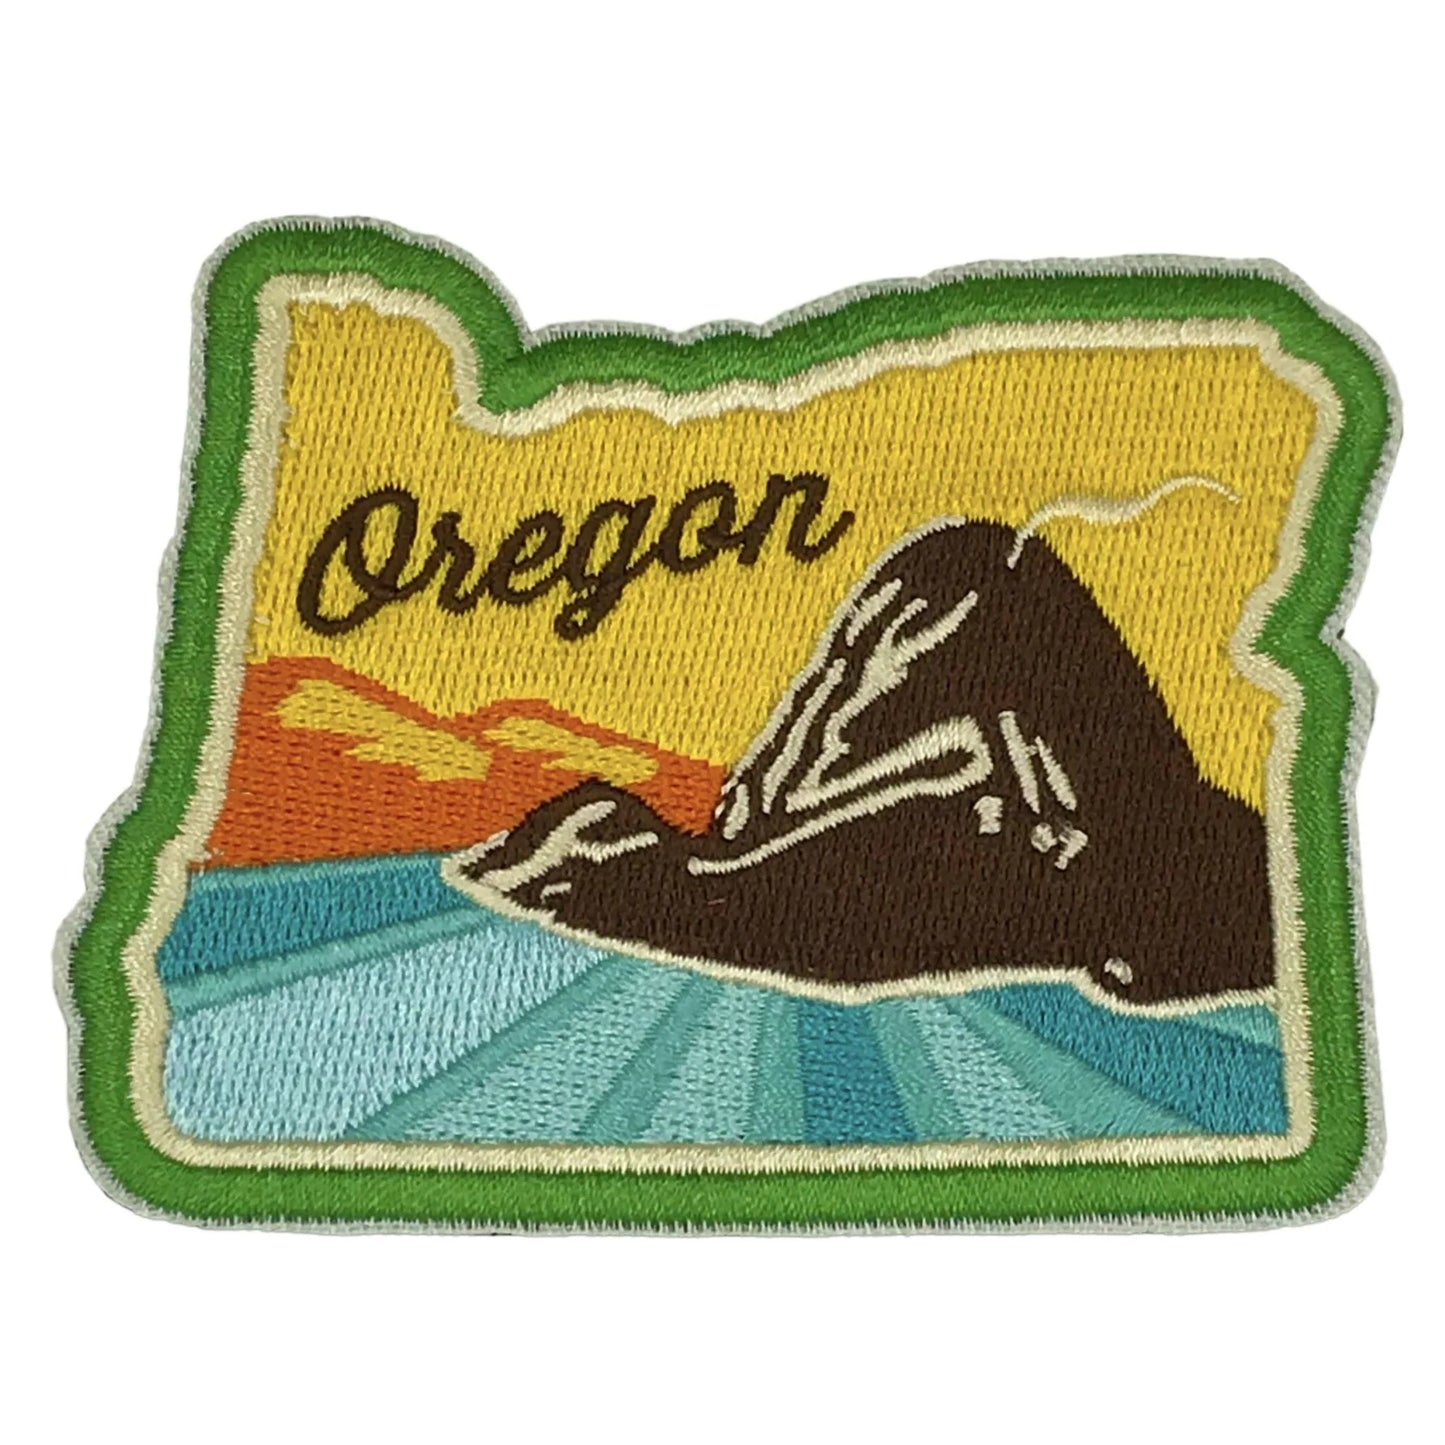 Oregon Coast Patch